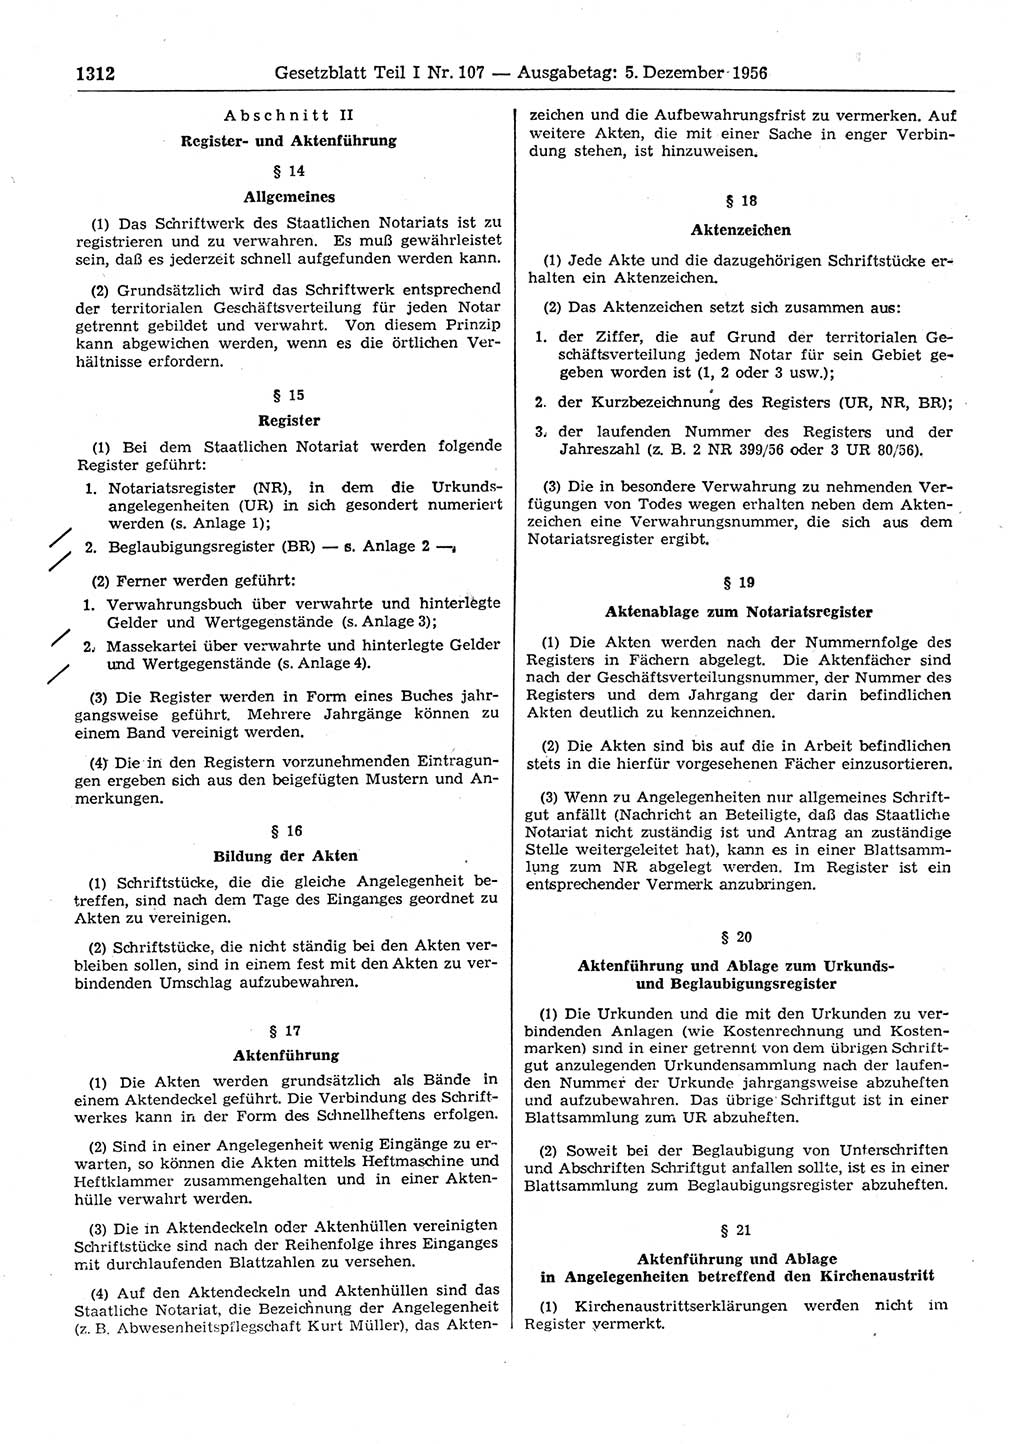 Gesetzblatt (GBl.) der Deutschen Demokratischen Republik (DDR) Teil Ⅰ 1956, Seite 1312 (GBl. DDR Ⅰ 1956, S. 1312)